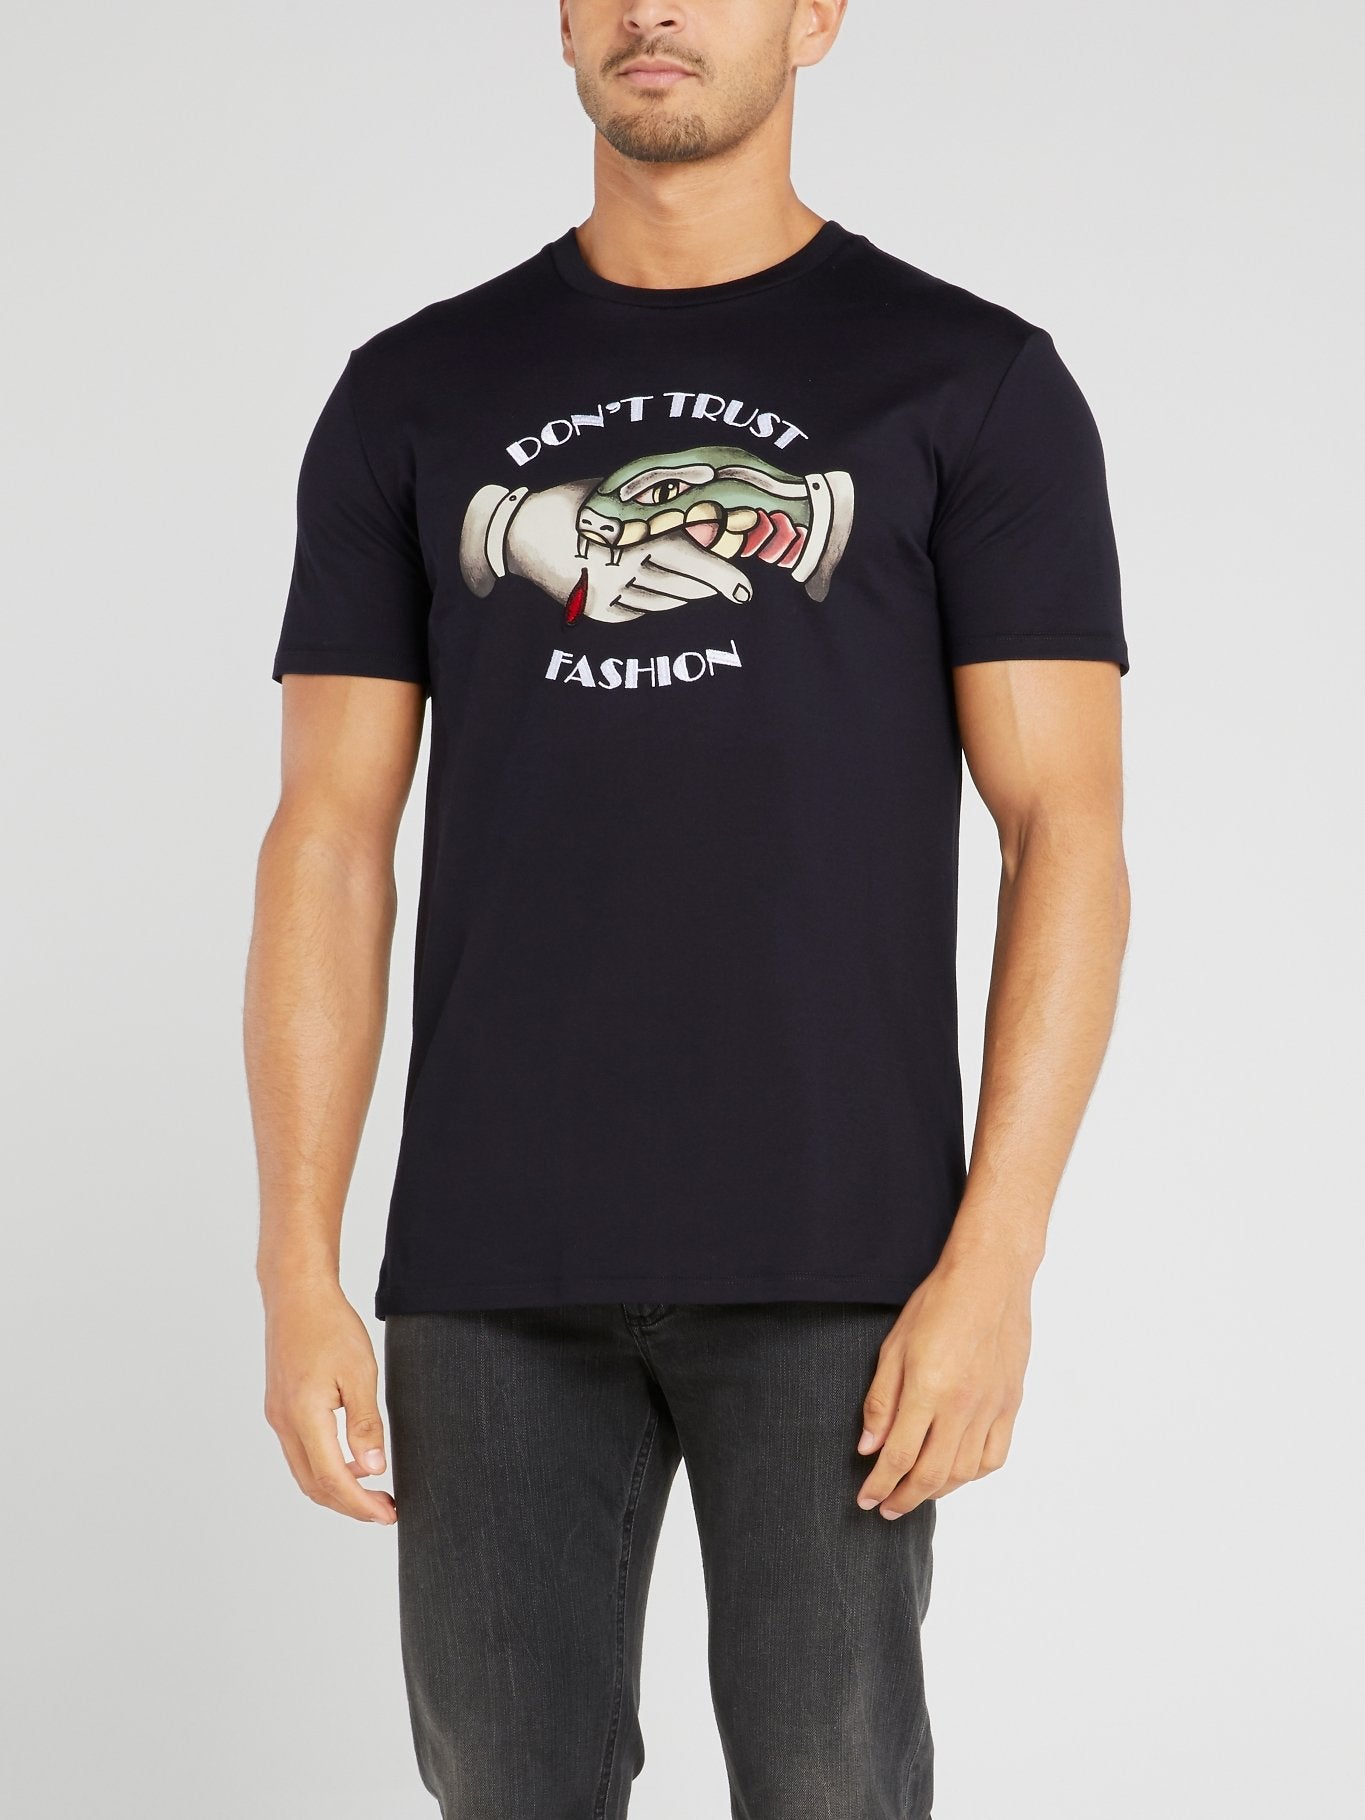 Navy Statement Cotton T-Shirt